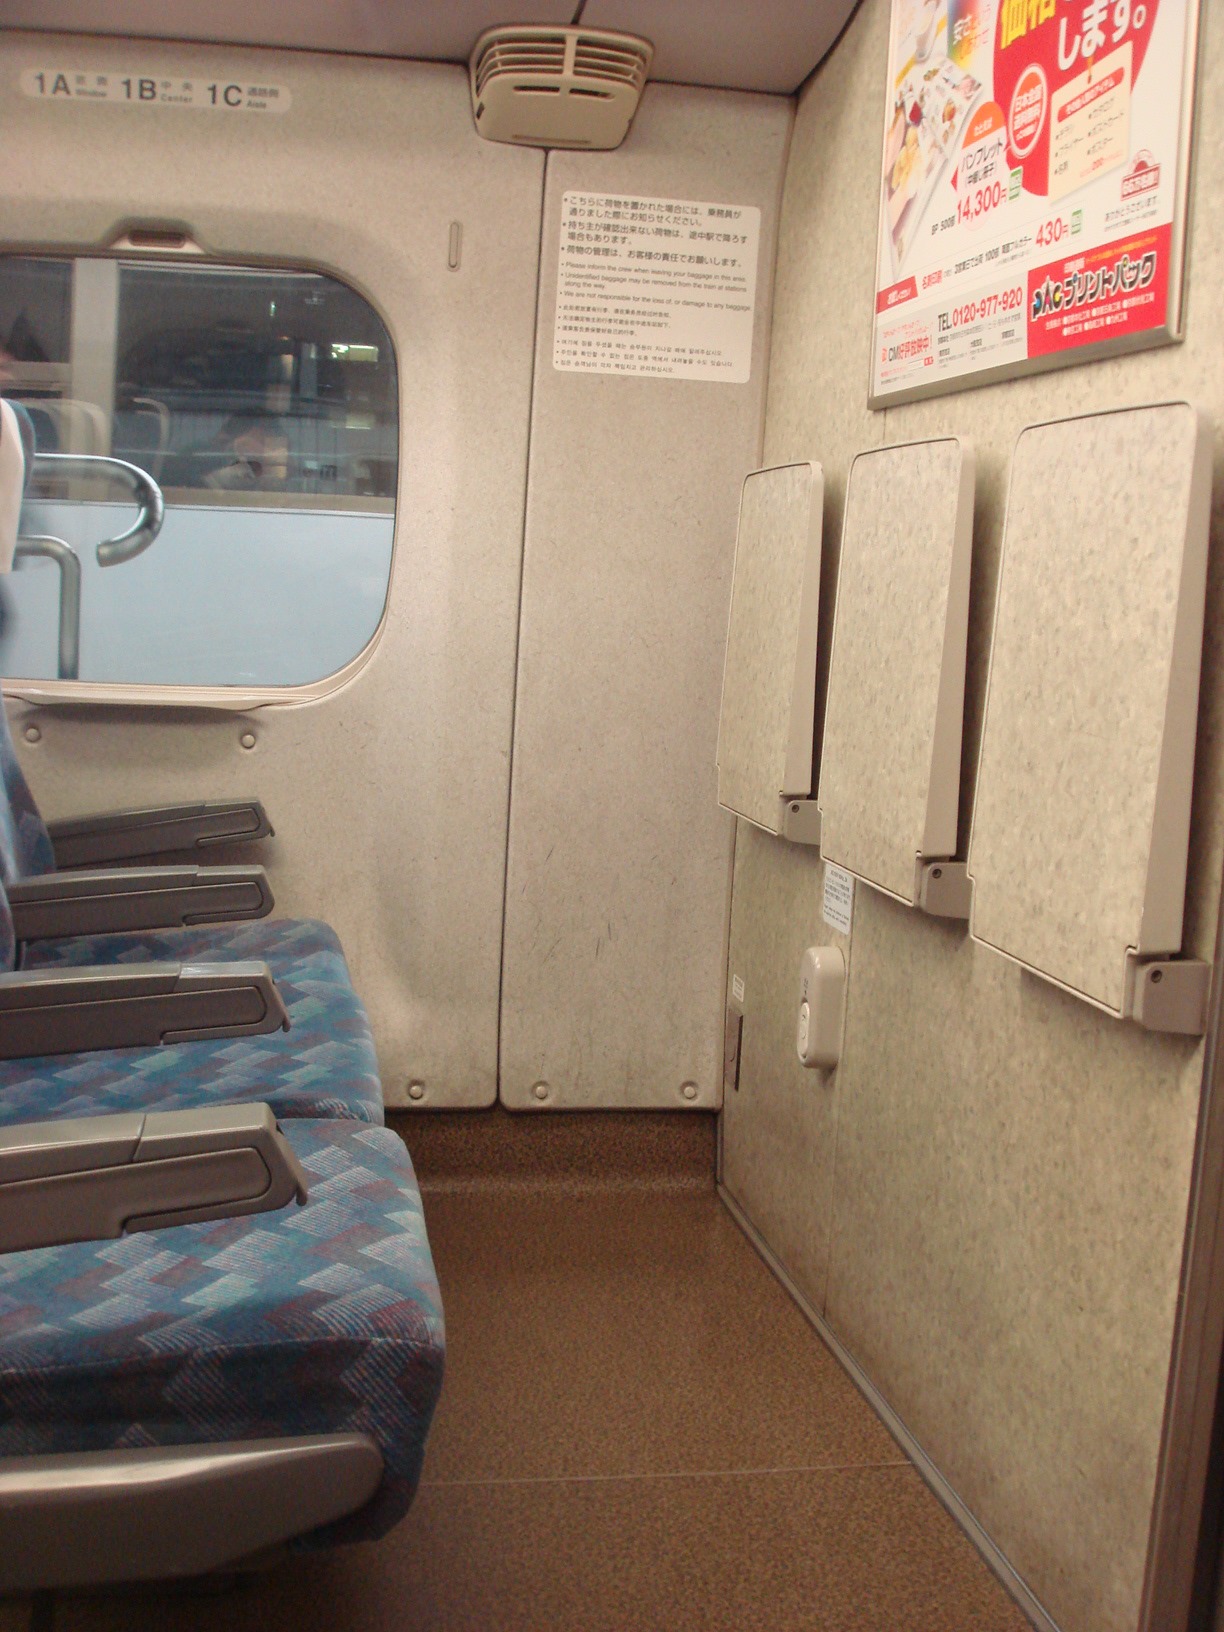 ベビーカー、車椅子がおける東海道新幹線11号車12番、13番 多目的室とコンセントについて調べてみた